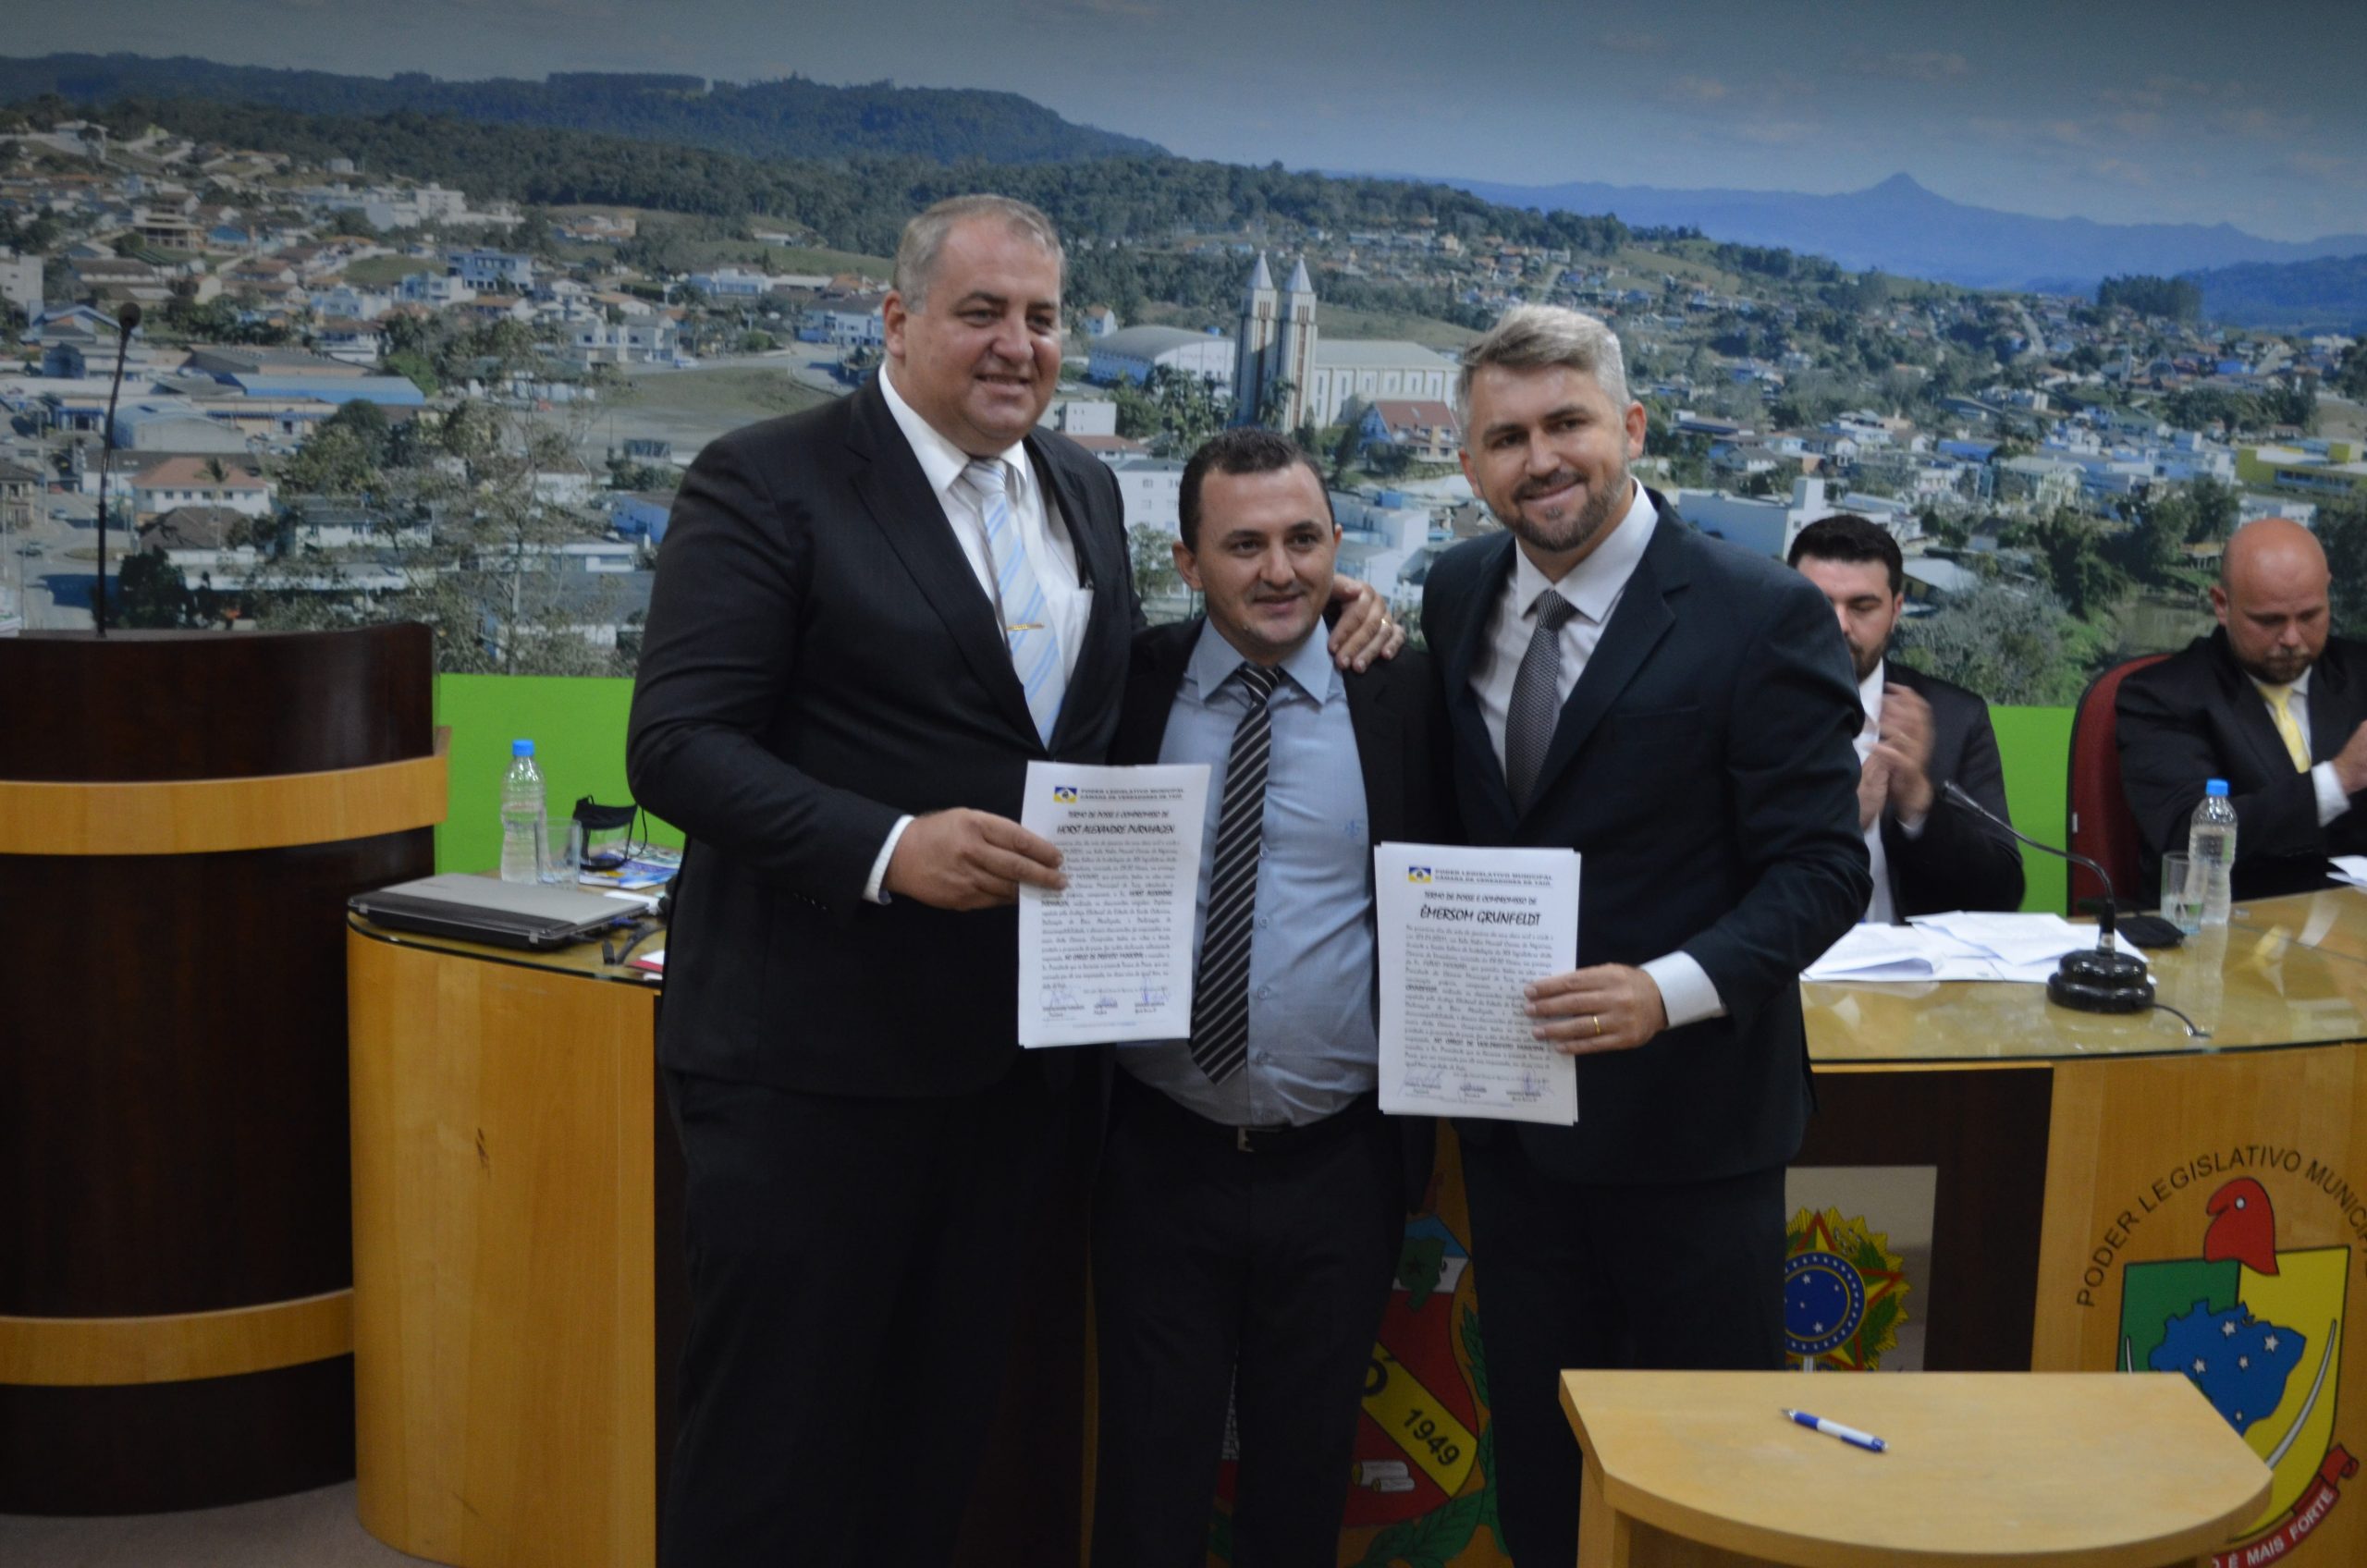 Alexandre Purnhagen e Emerson Grunfeldt são empossados prefeito e vice-prefeito de Taió